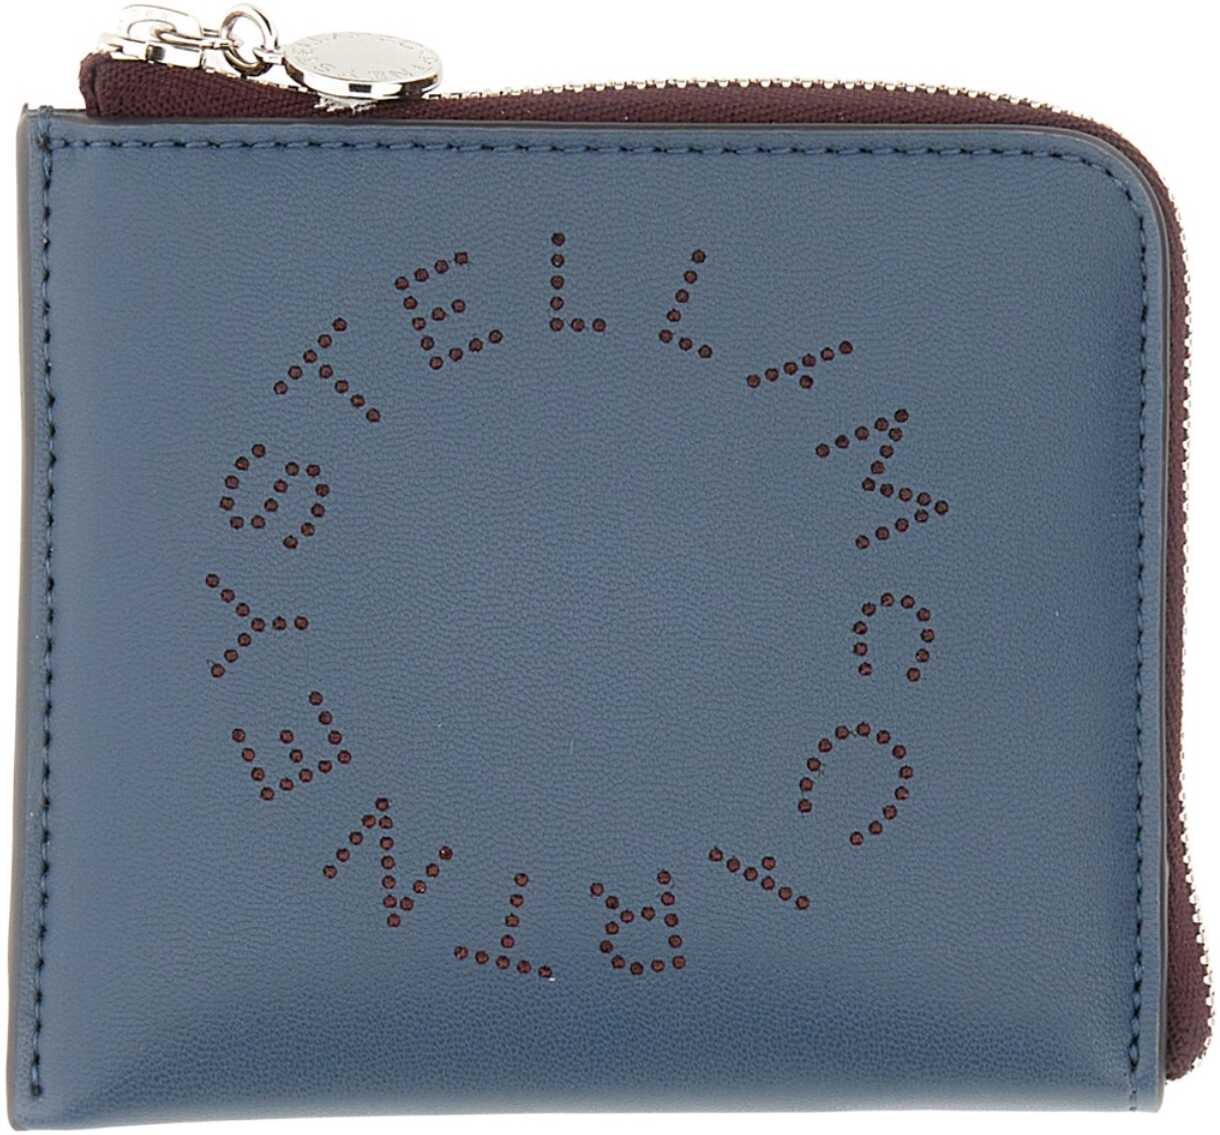 Stella McCartney Zipped Wallet BLUE